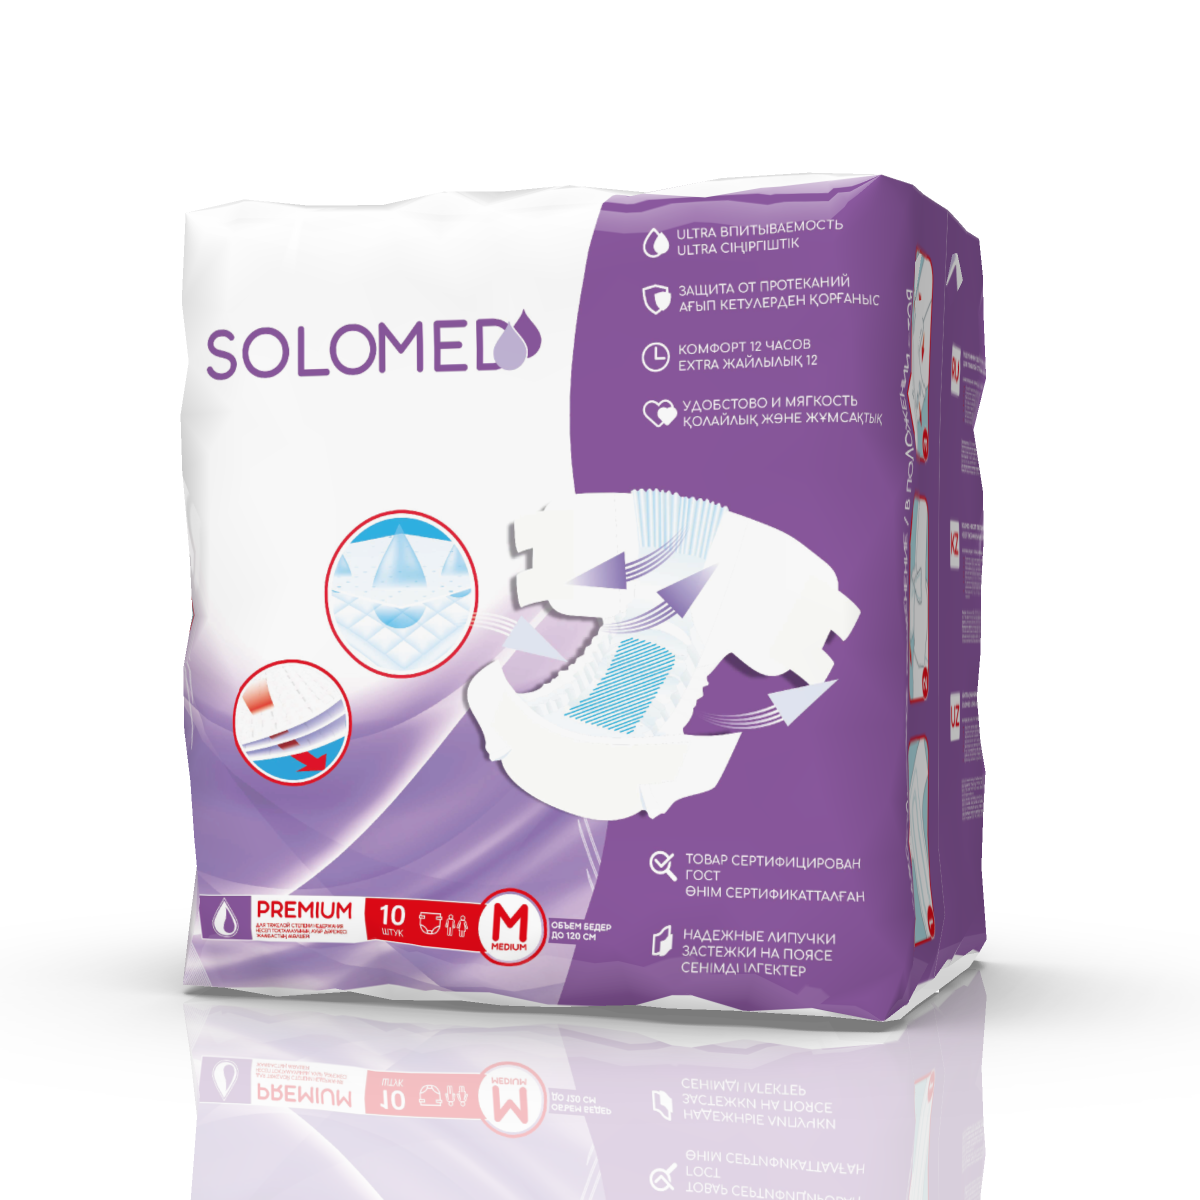 Solomed Premium, подгузники для взрослых (размер M), 10 шт. размер и форма мат прописи